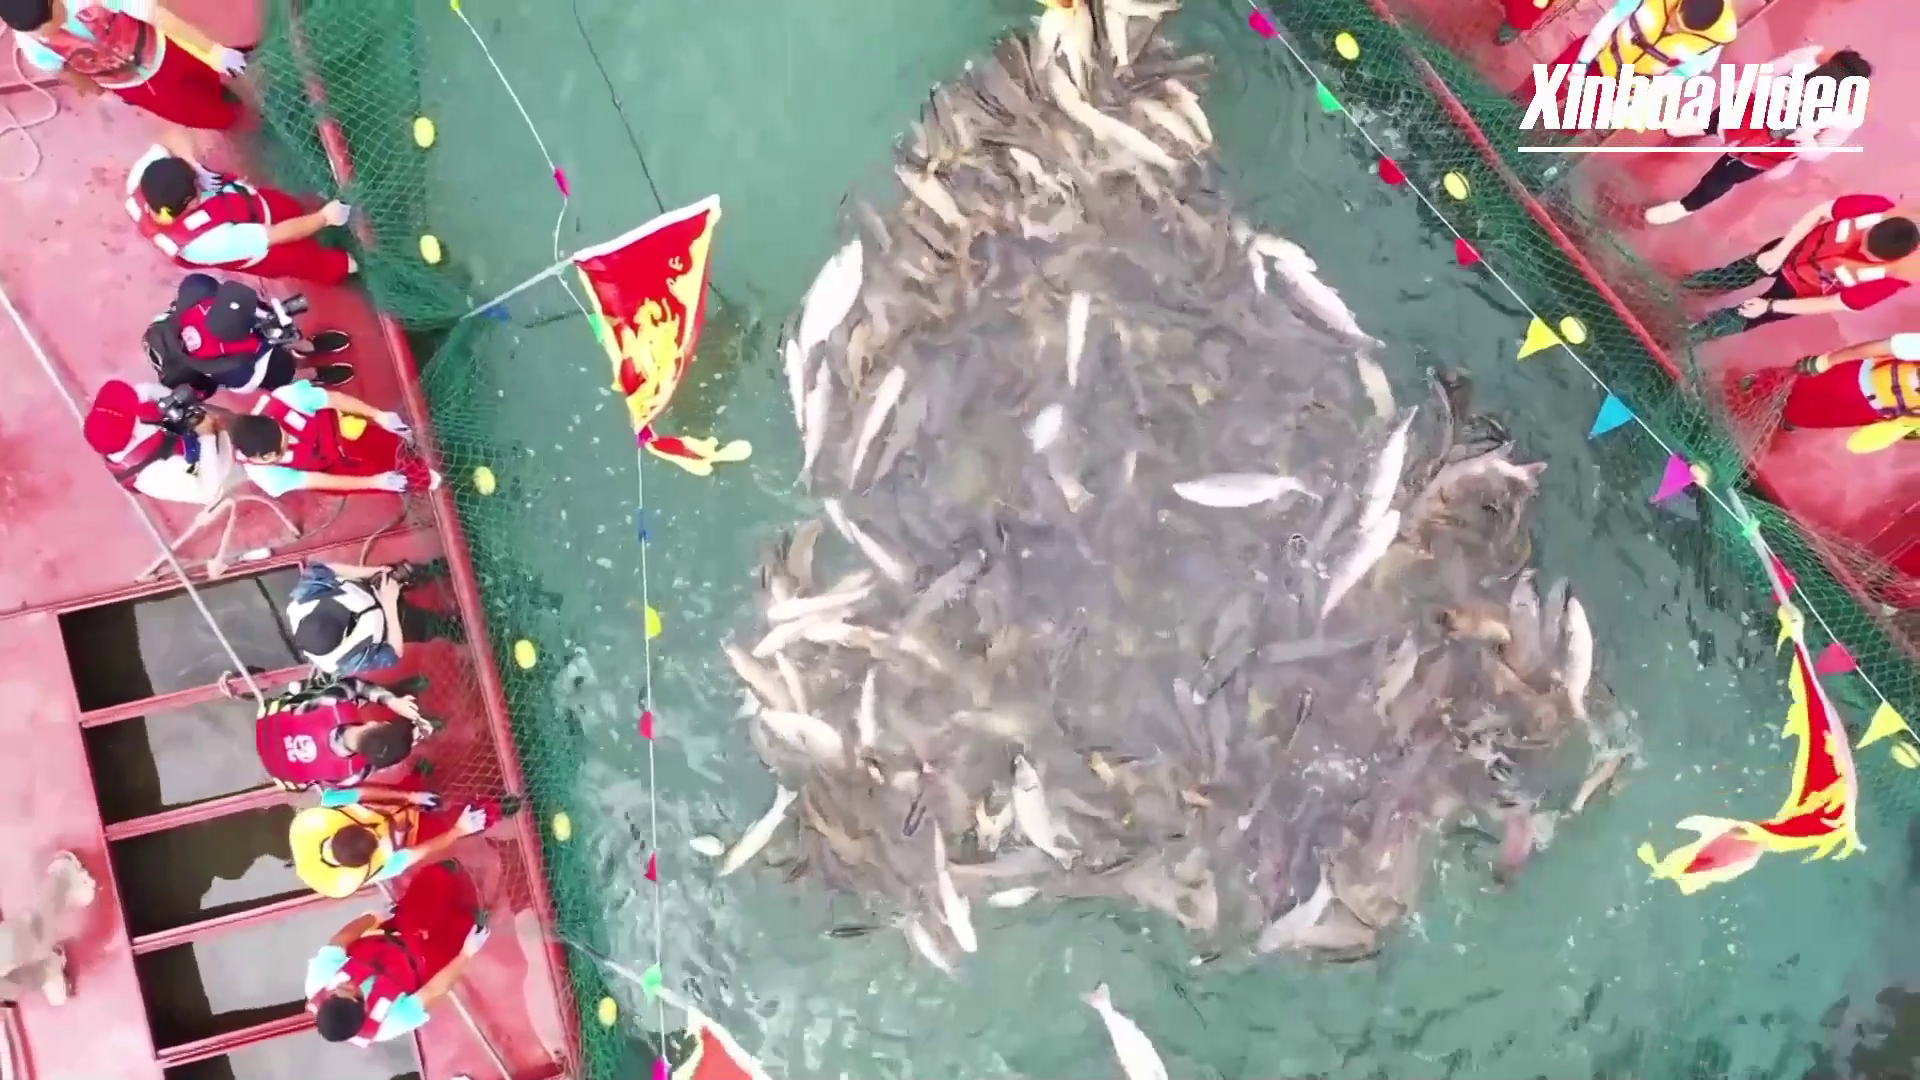 'ทะเลสาบน้ำจืด' ในแผ่นดินใหญ่สุดของจีน เปิดฉากฤดูจับปลา